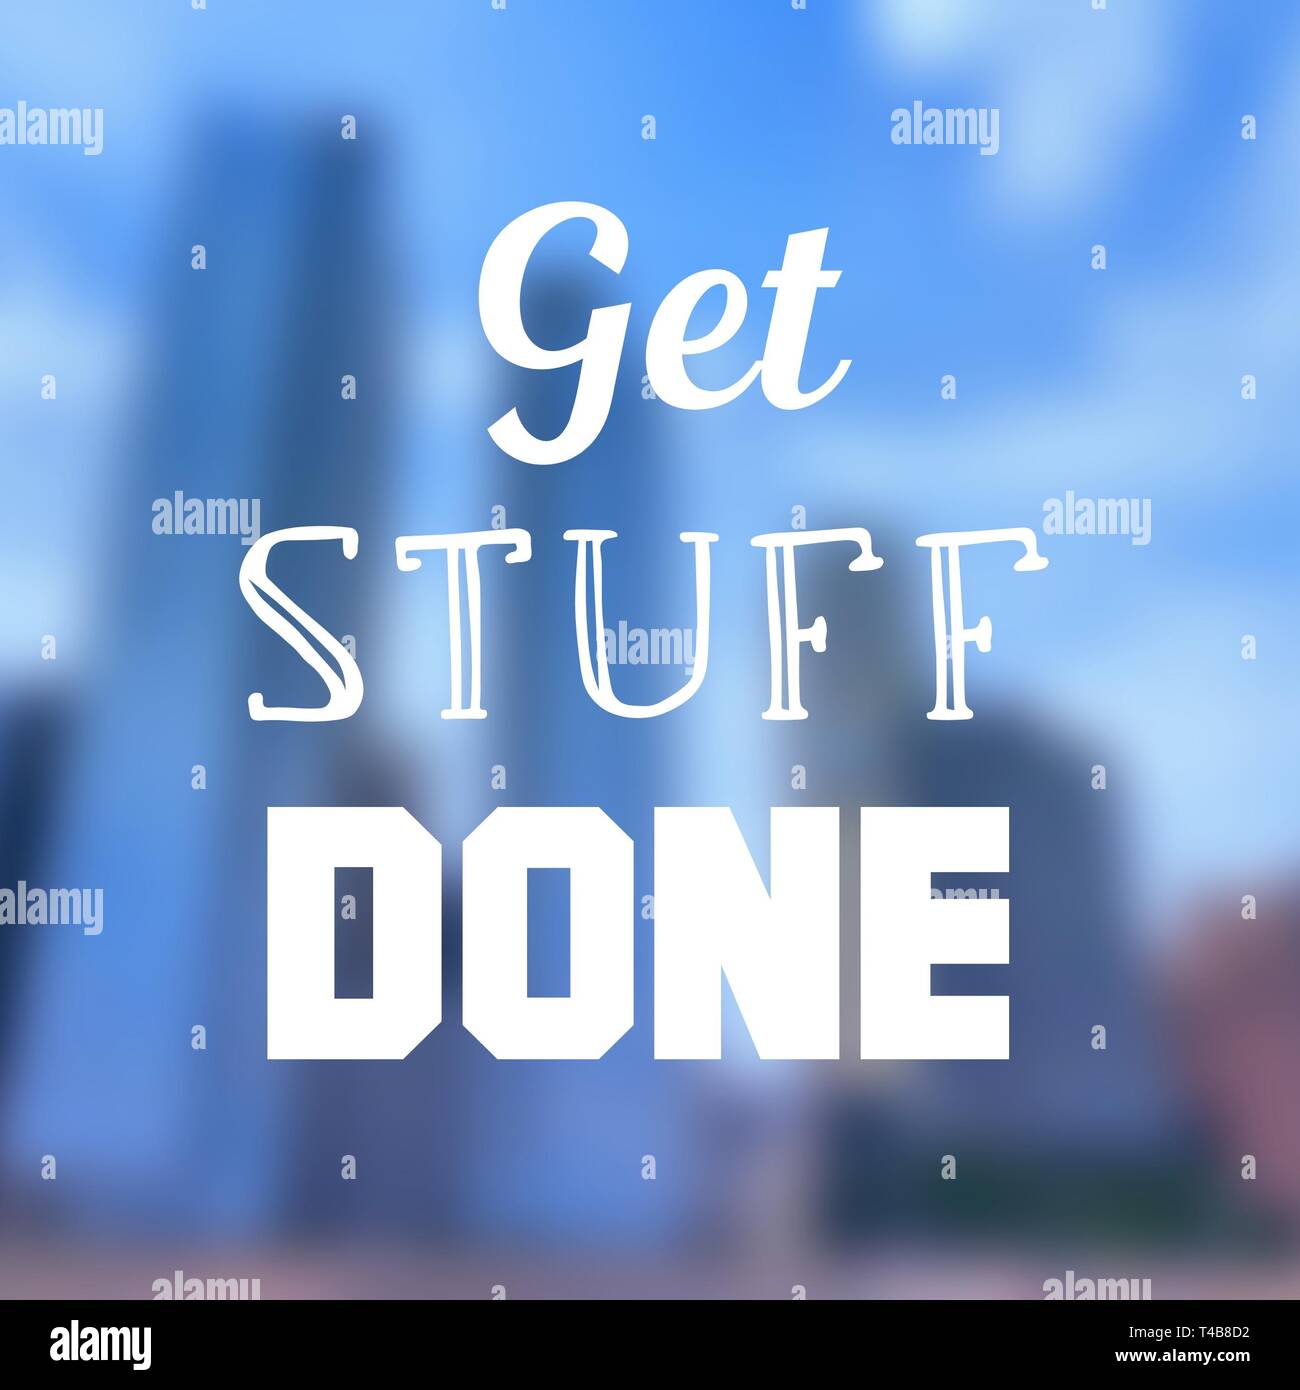 Get stuff done - affiche de la motivation au travail et les objectifs de la proactivité. Banque D'Images